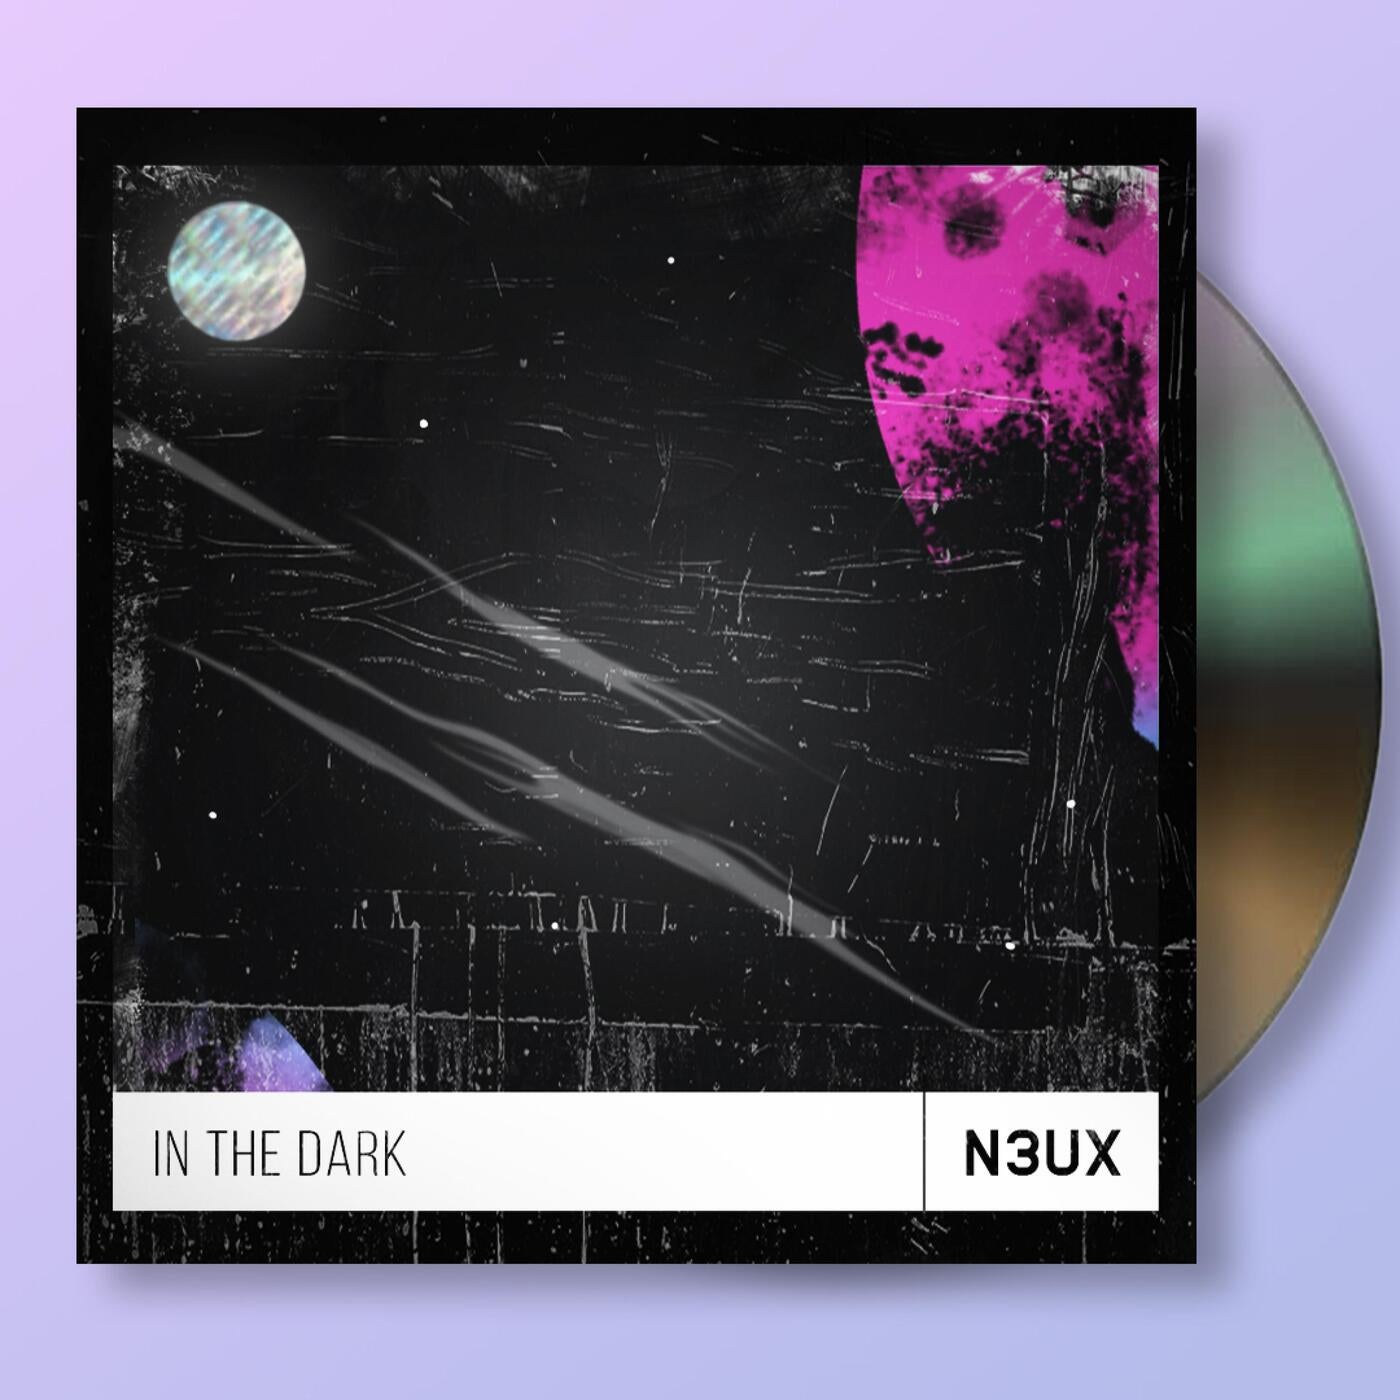 N3UX music download - Beatport